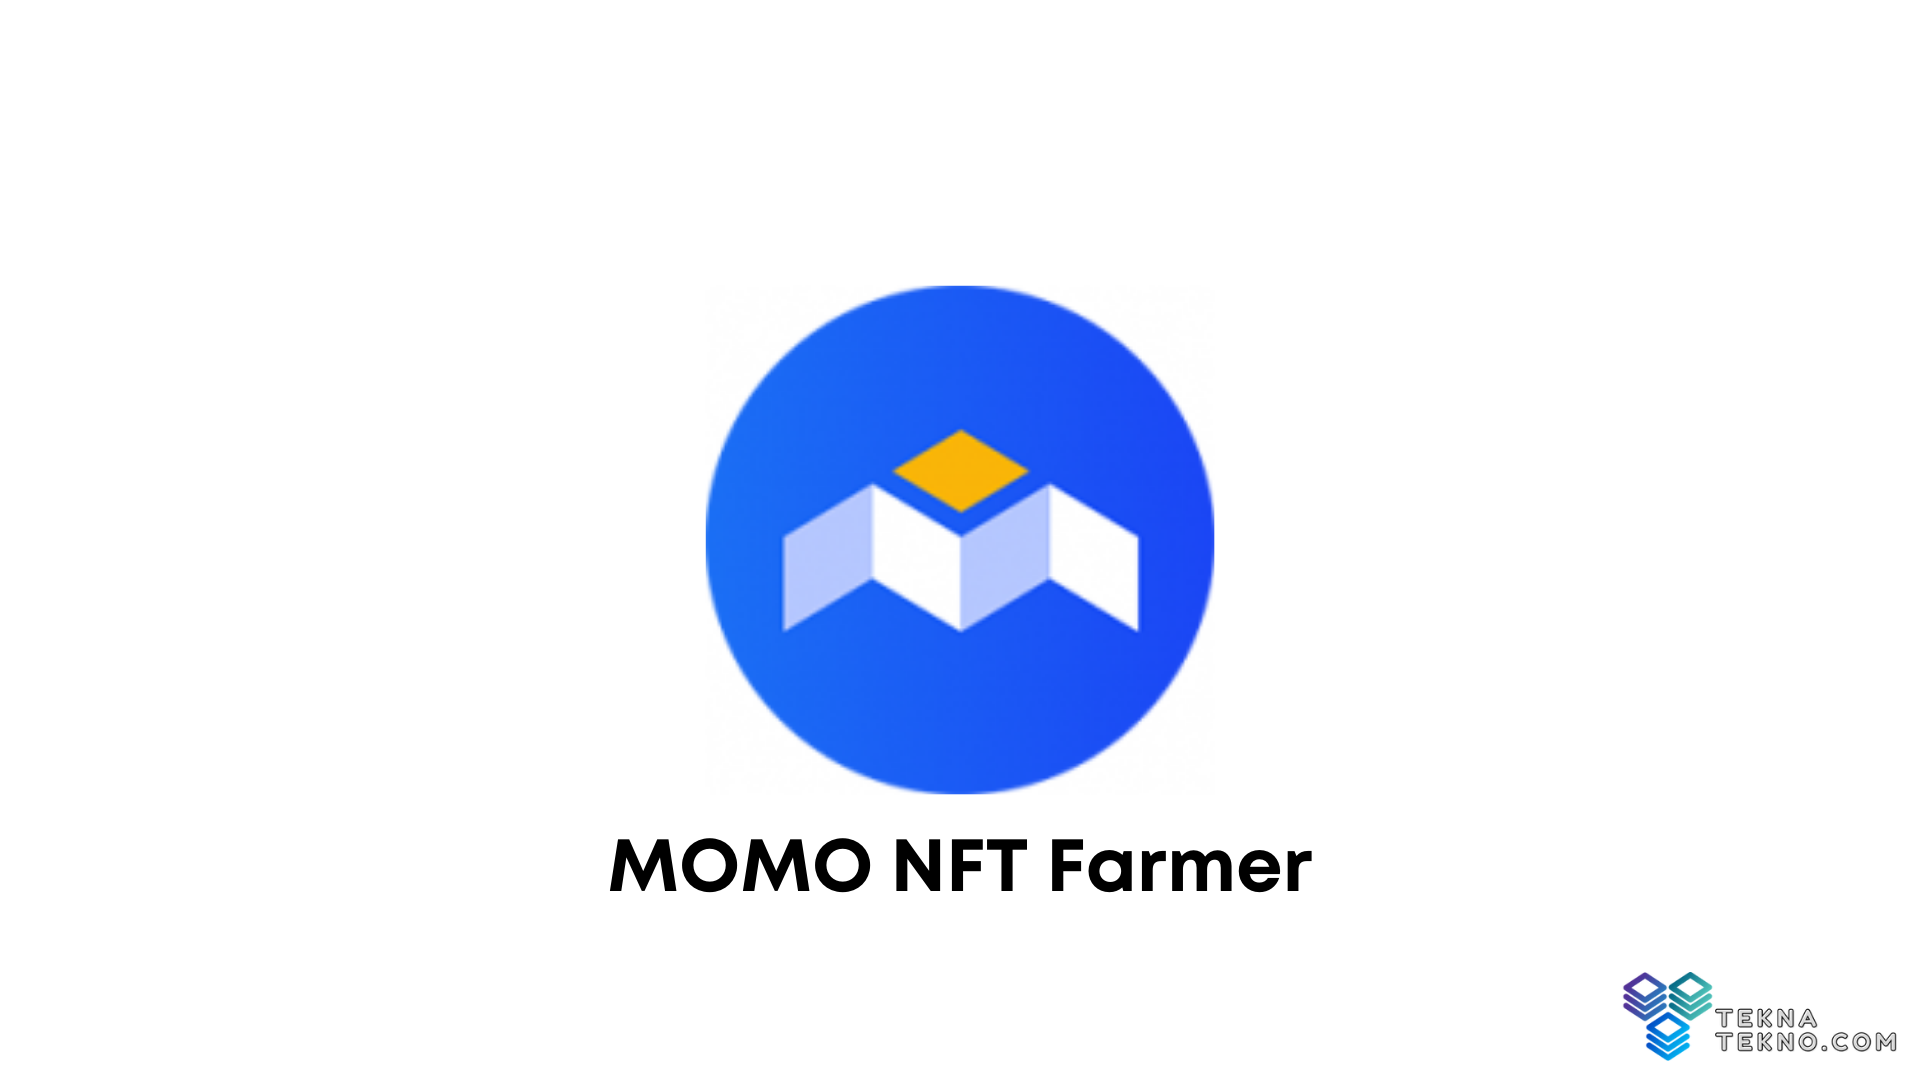 Apa itu MOMO NFT Farmer? Simak Artikel Berikut Ini